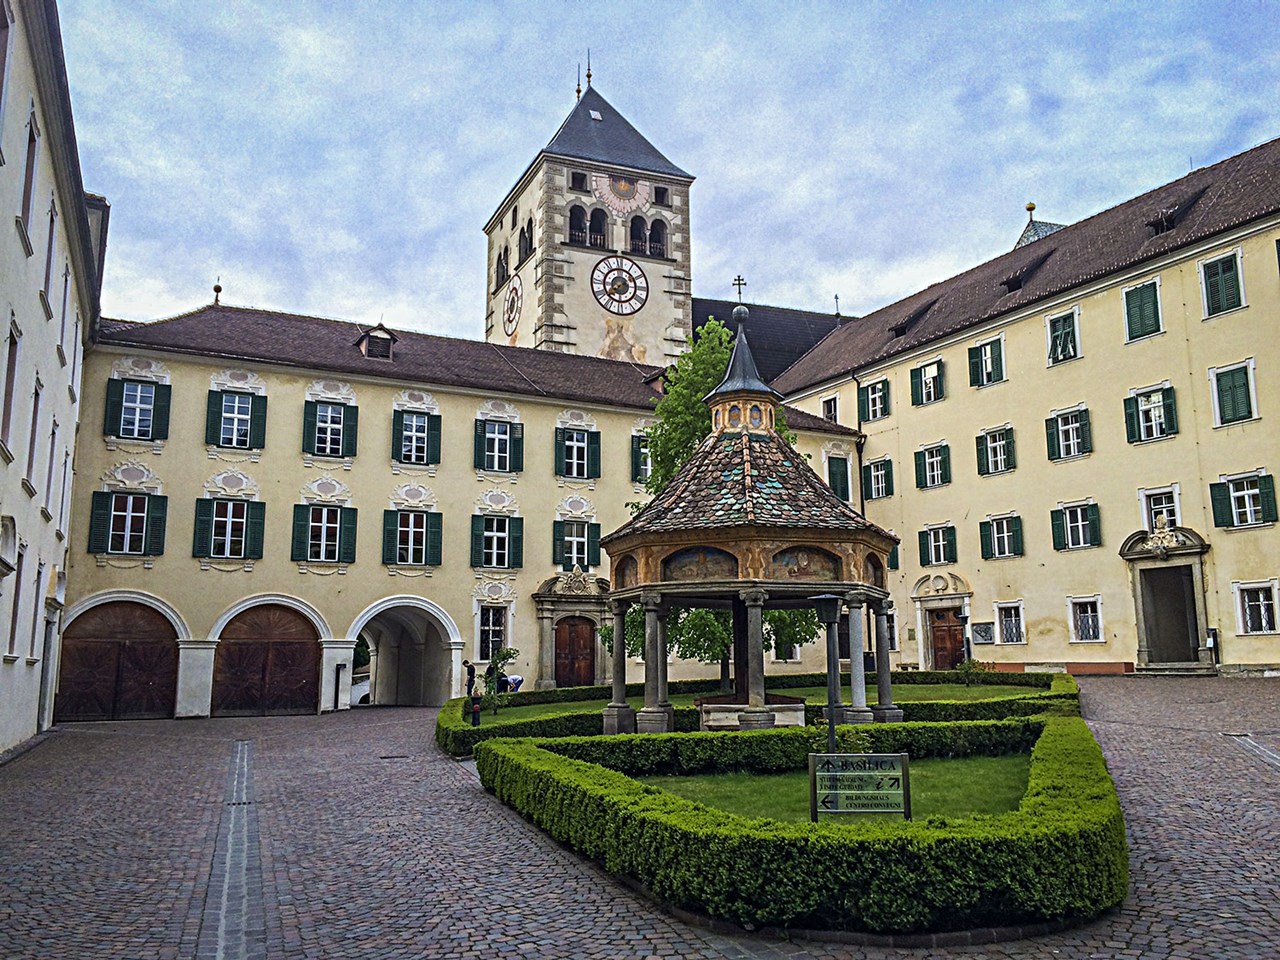 Hotel Masl Ausflugsziele Das Augustiner Chorherrenstift Neustift mit Kloster Neustift (30 Min)